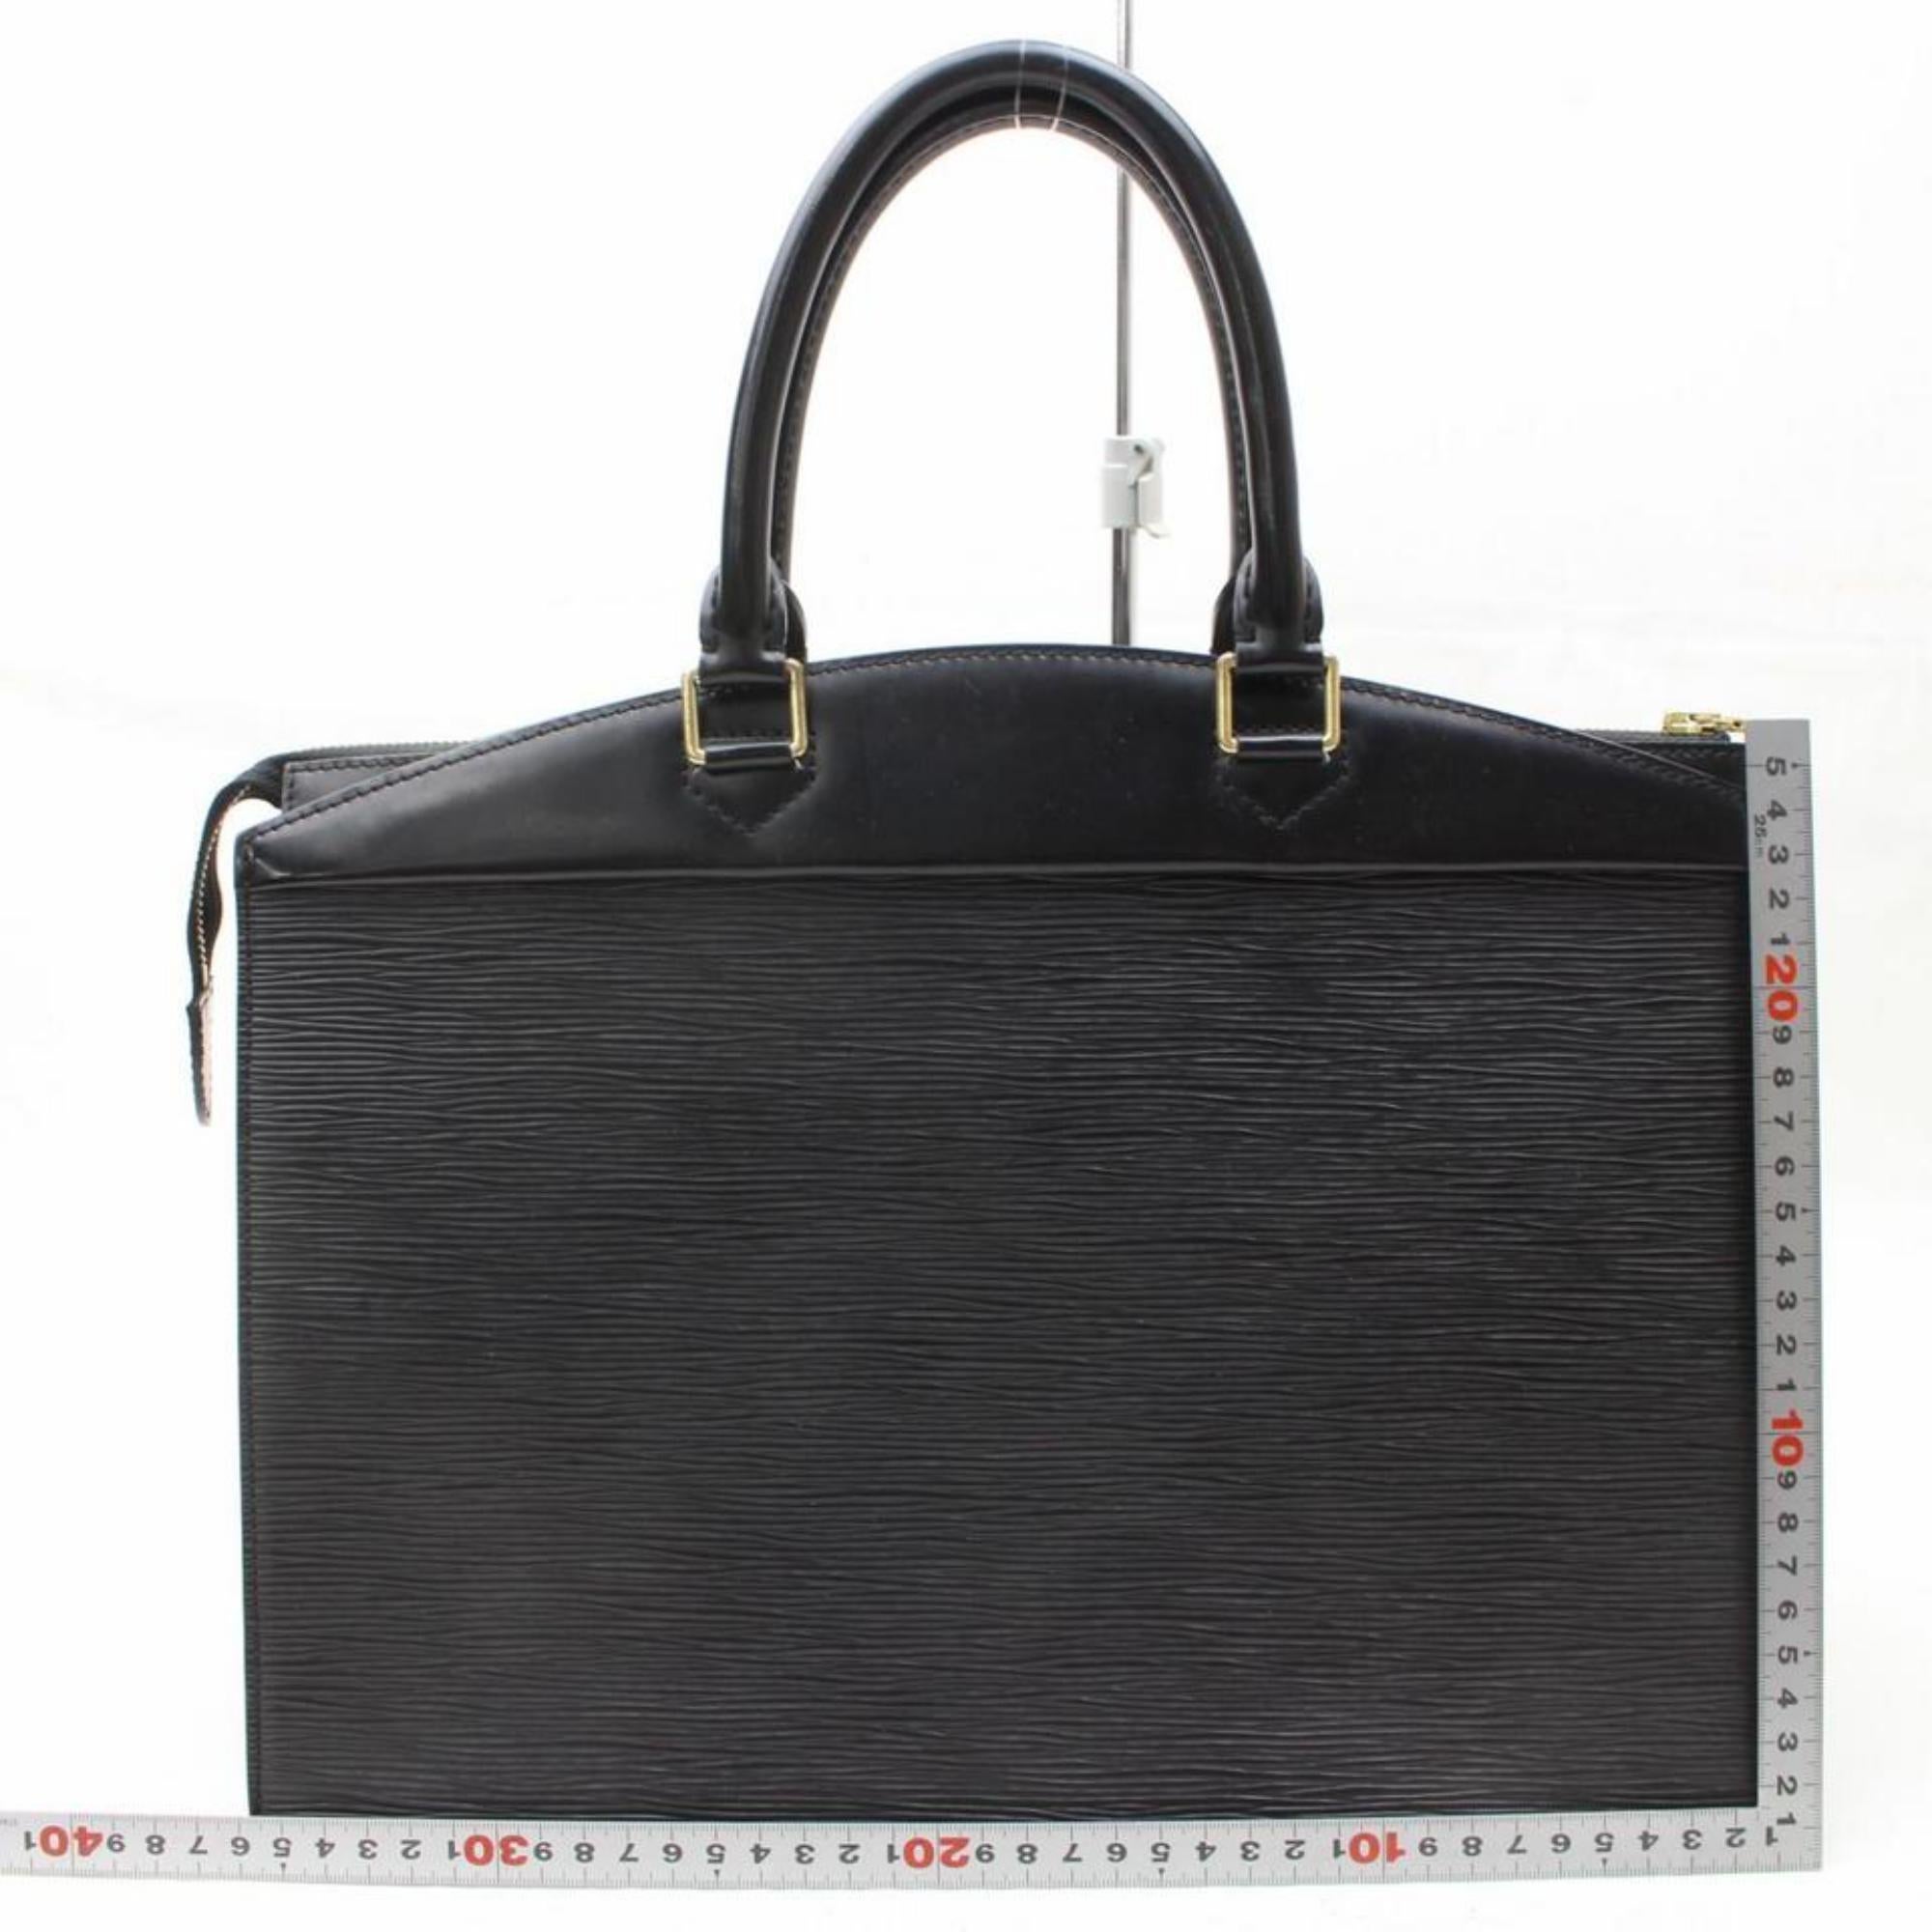 Louis Vuitton Riviera Vanity Case 868557 Black Leather Satchel For Sale 2